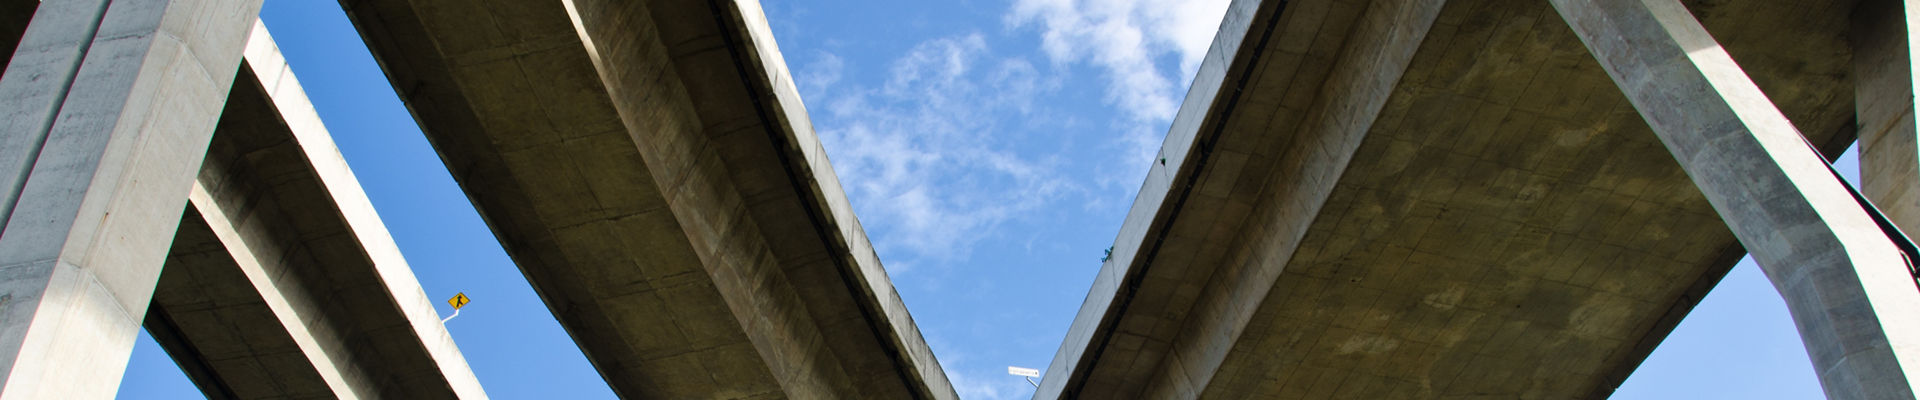 高架式高速道路 タイの吊り橋のカーブ